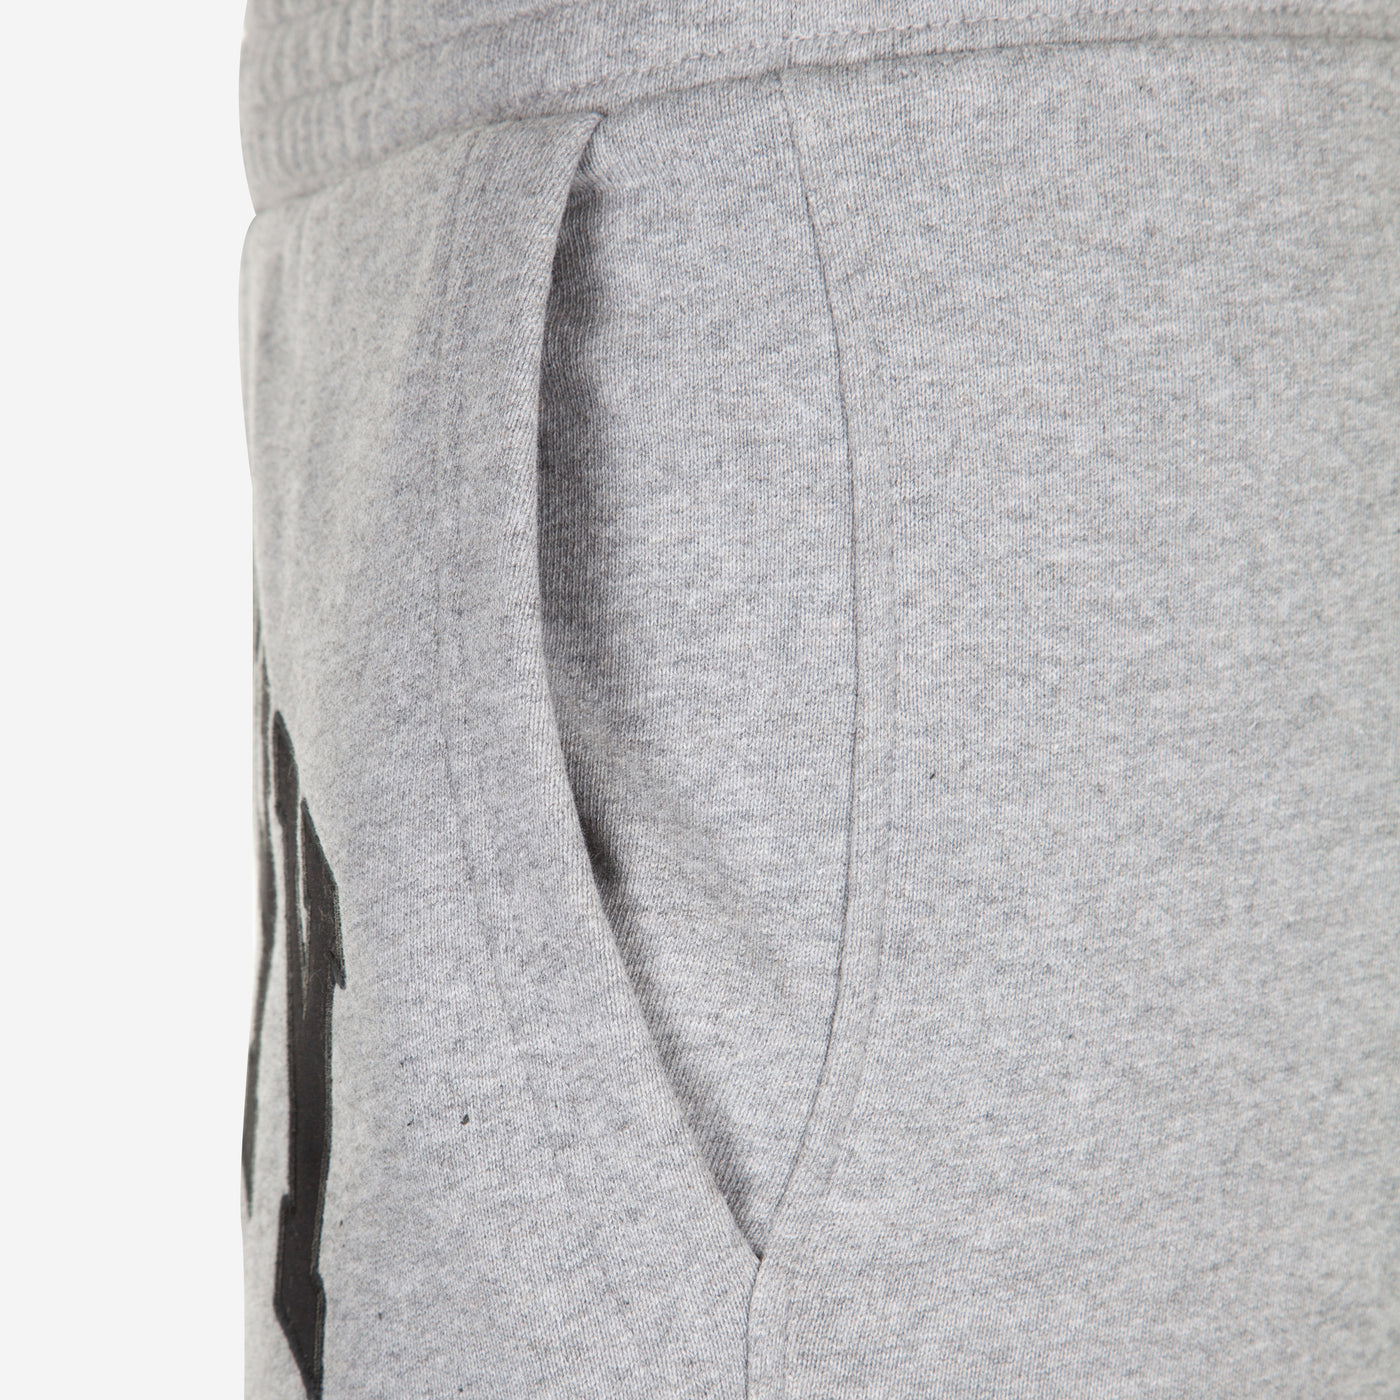 Givenchy Logo Jogger Pants